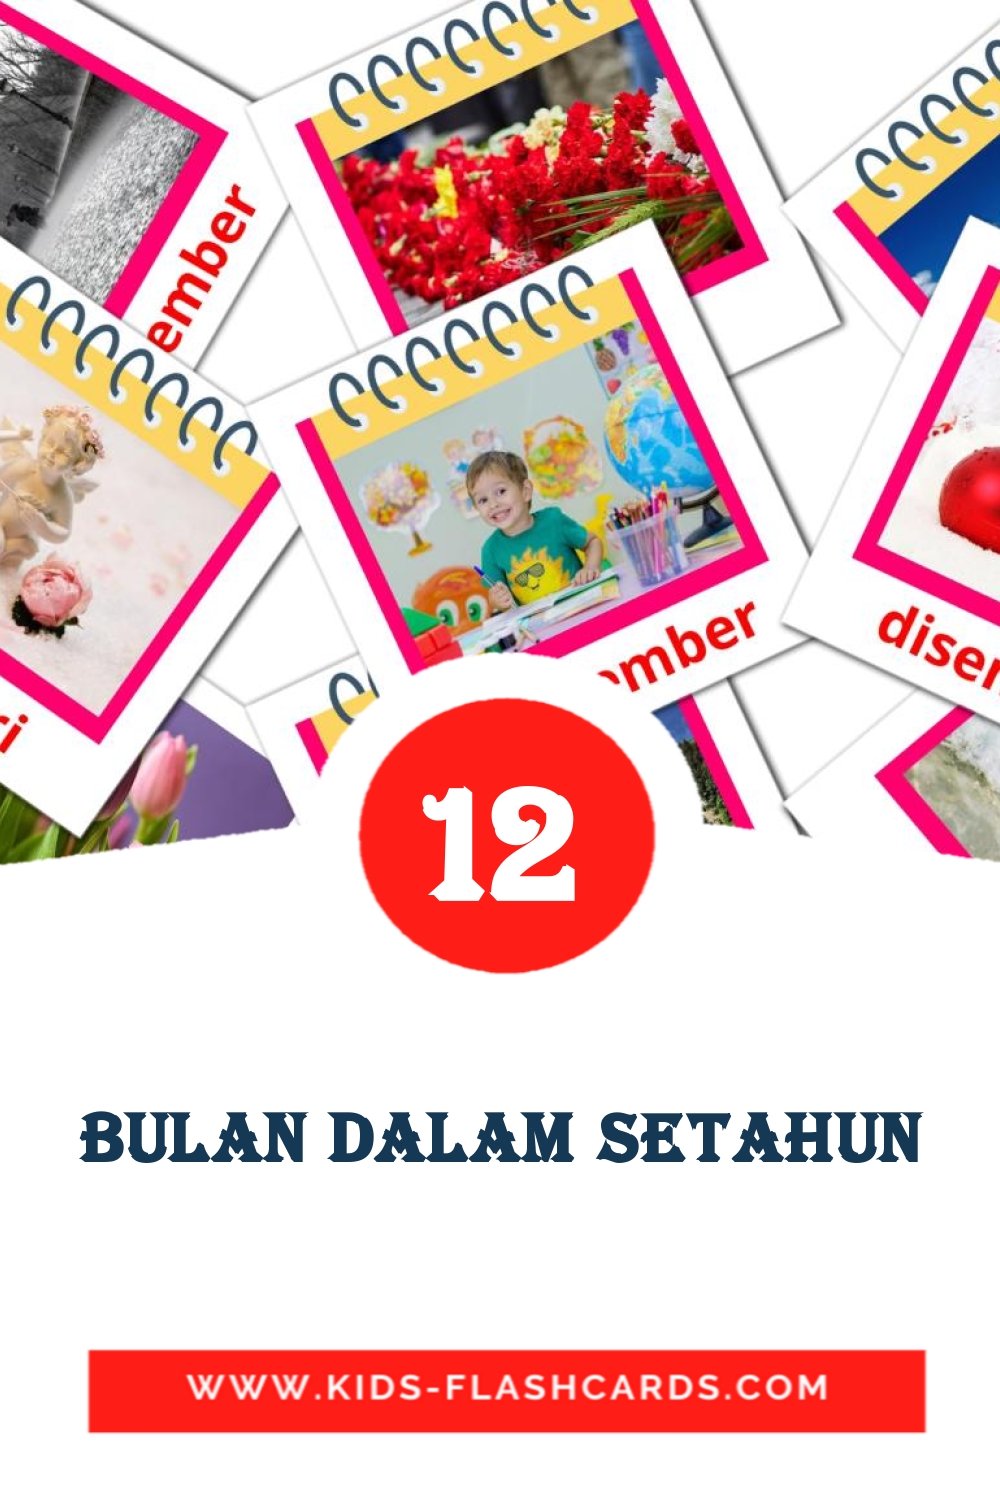 12 tarjetas didacticas de Bulan Dalam Setahun para el jardín de infancia en malayo